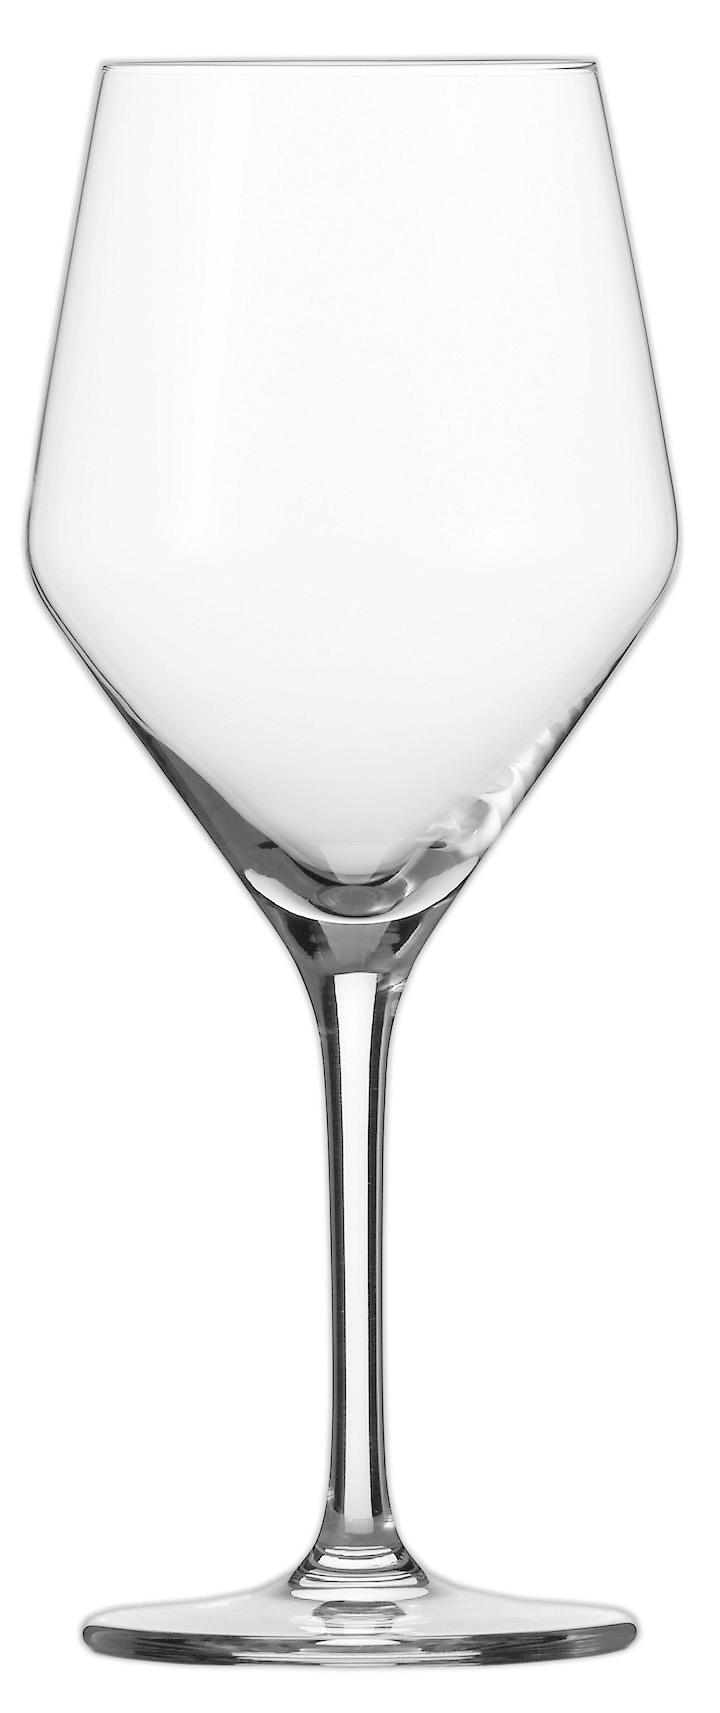 Weinglas Allround, Basic Bar Selection, Schott Zwiesel - 401ml (1 Stk.)